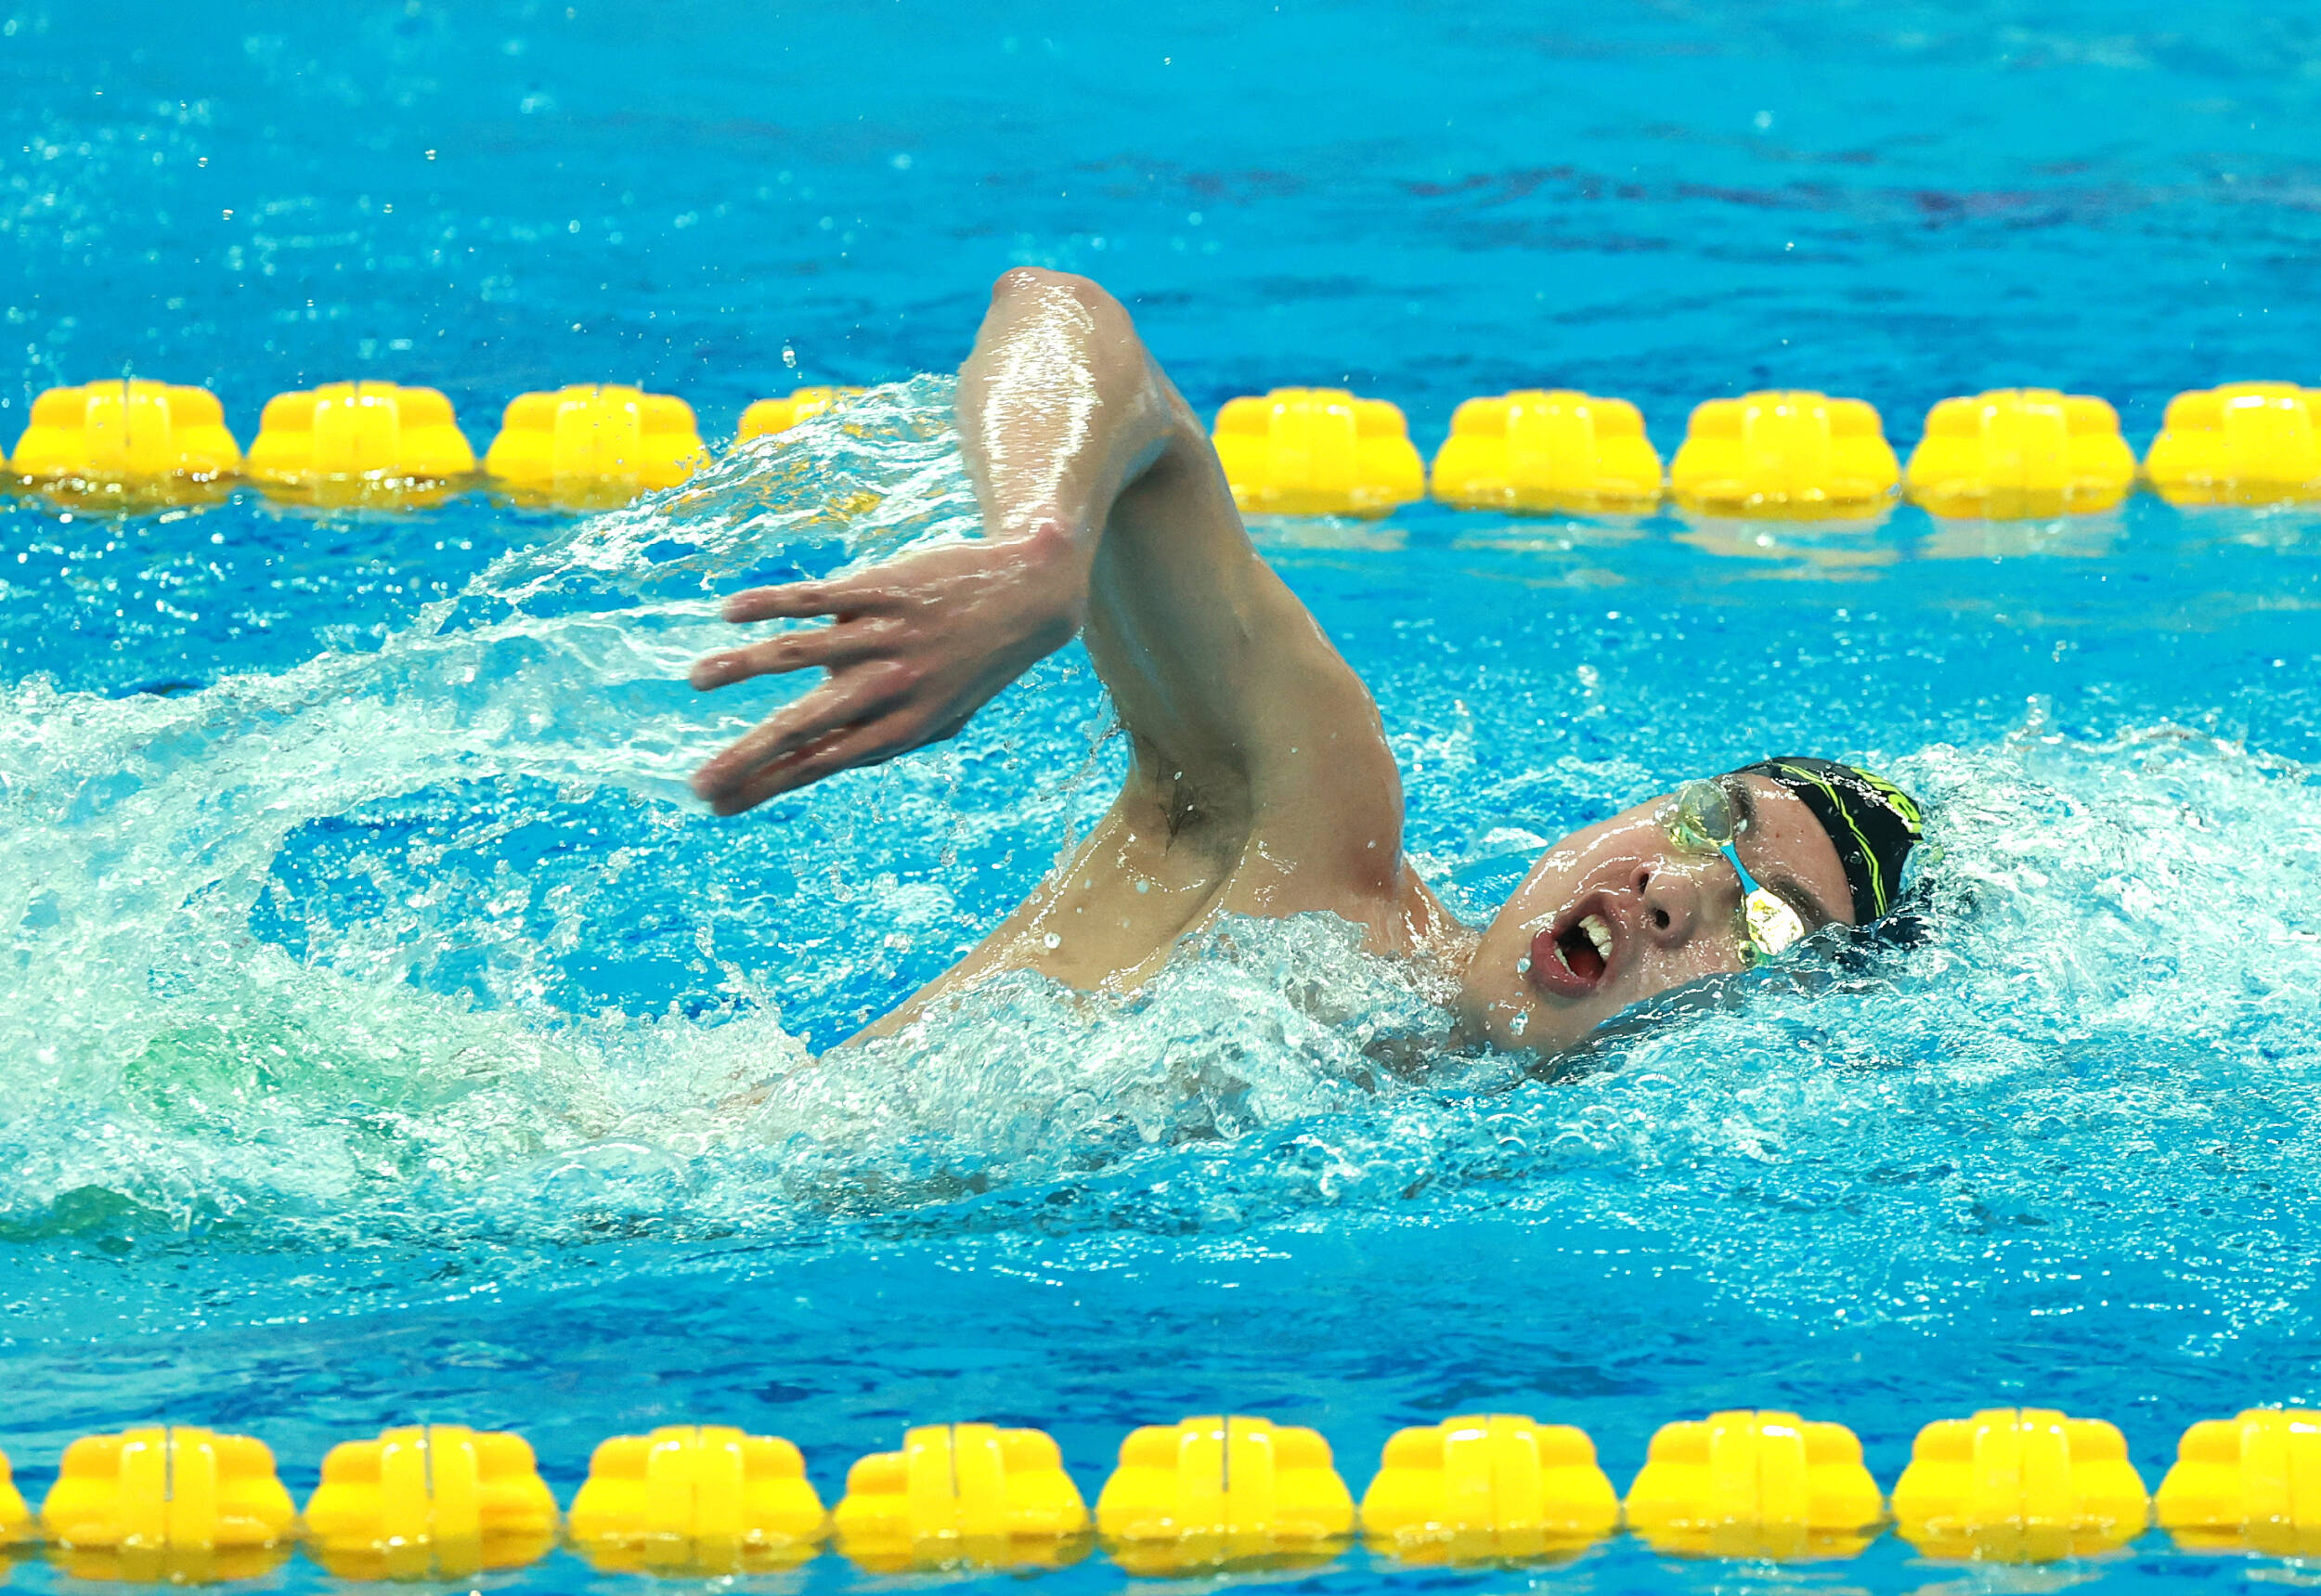 第58金！程龙获全运会游泳男子1500米自由泳冠军